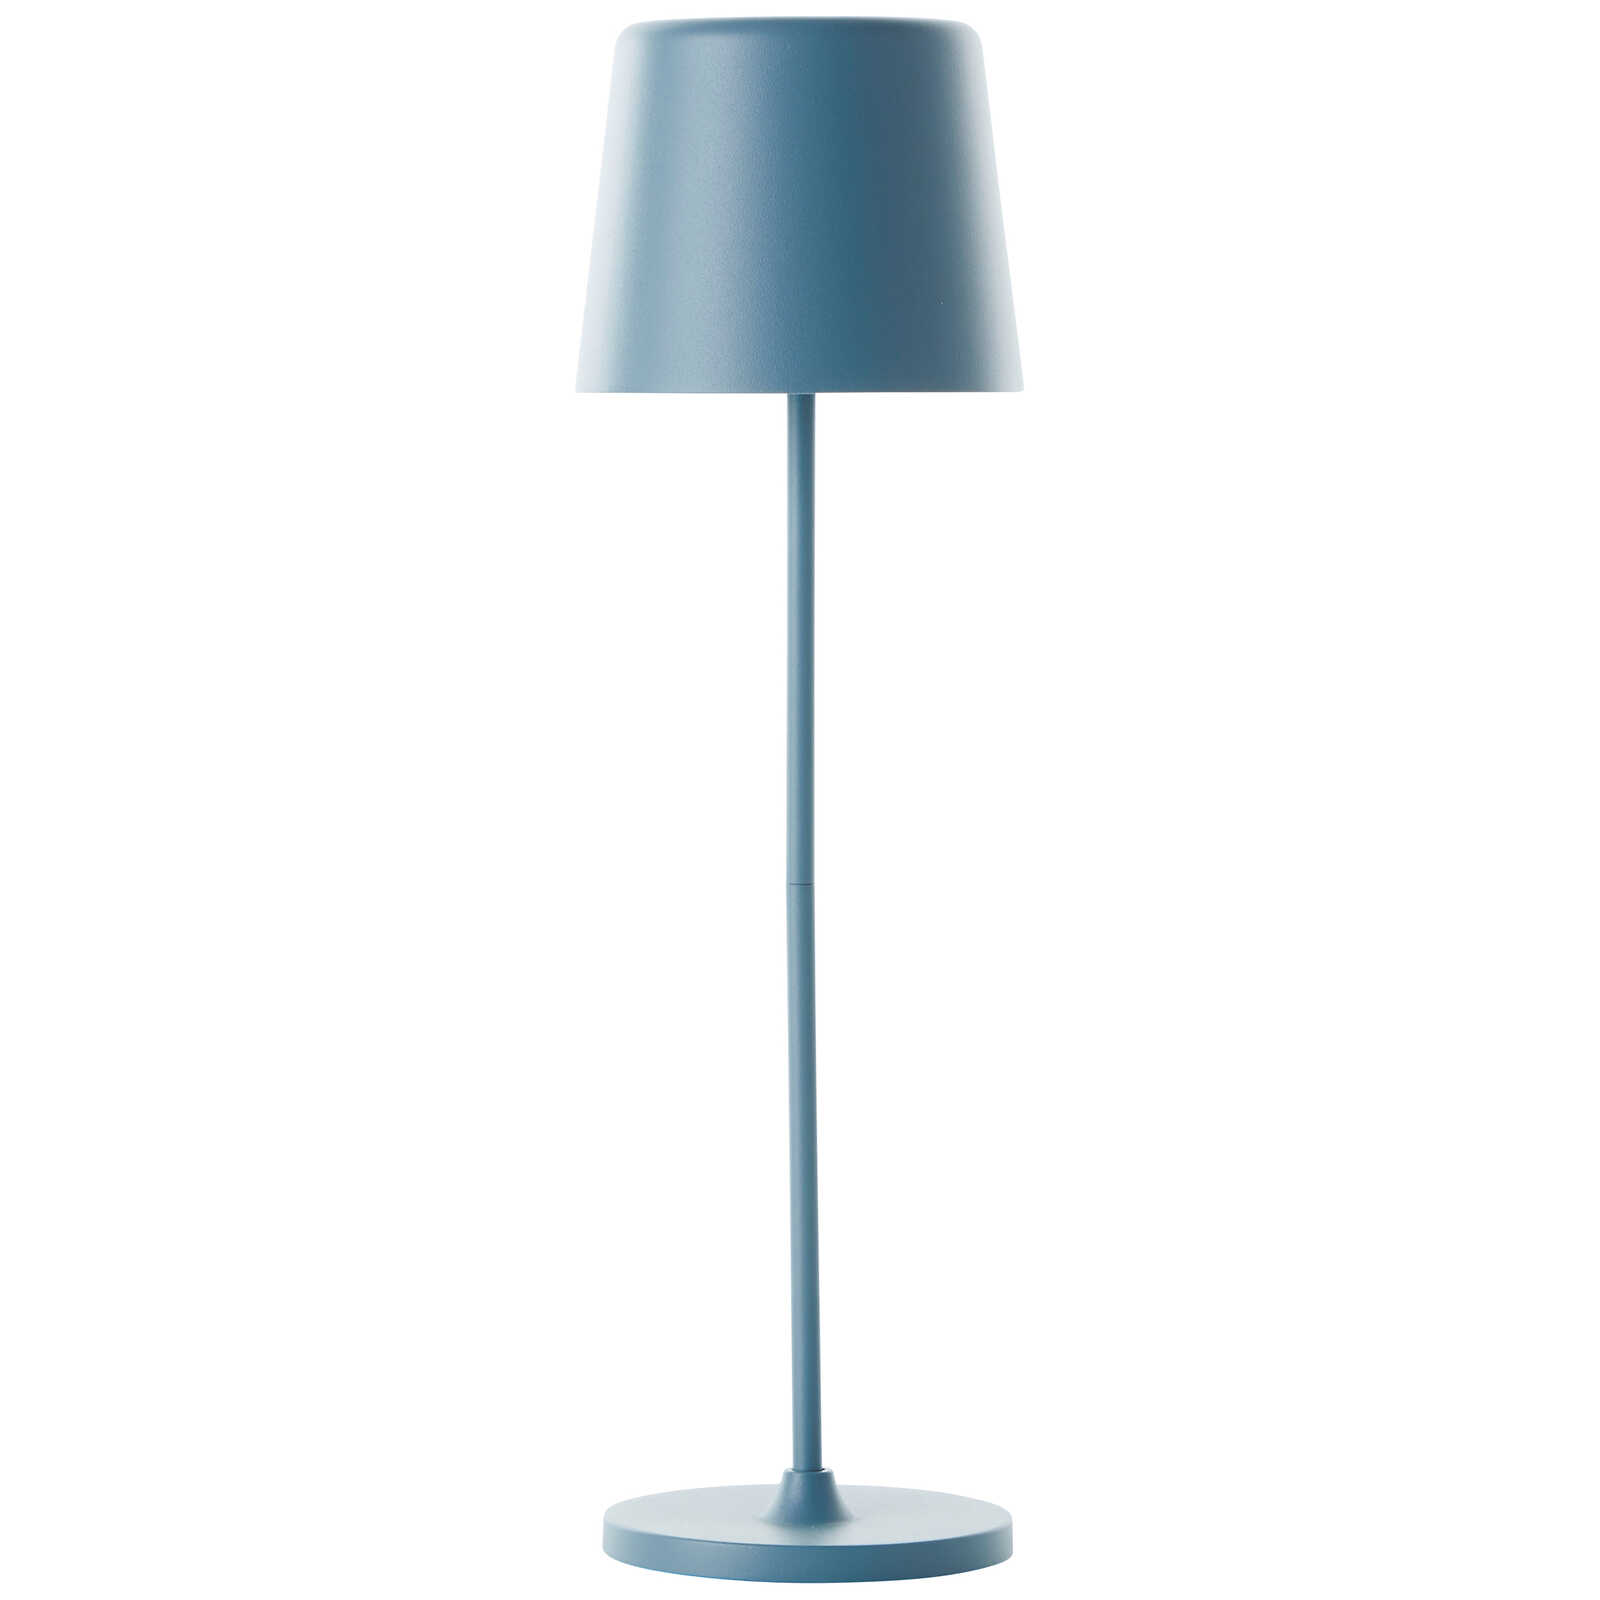             Metalen tafellamp - Cosy 1 - Blauw
        